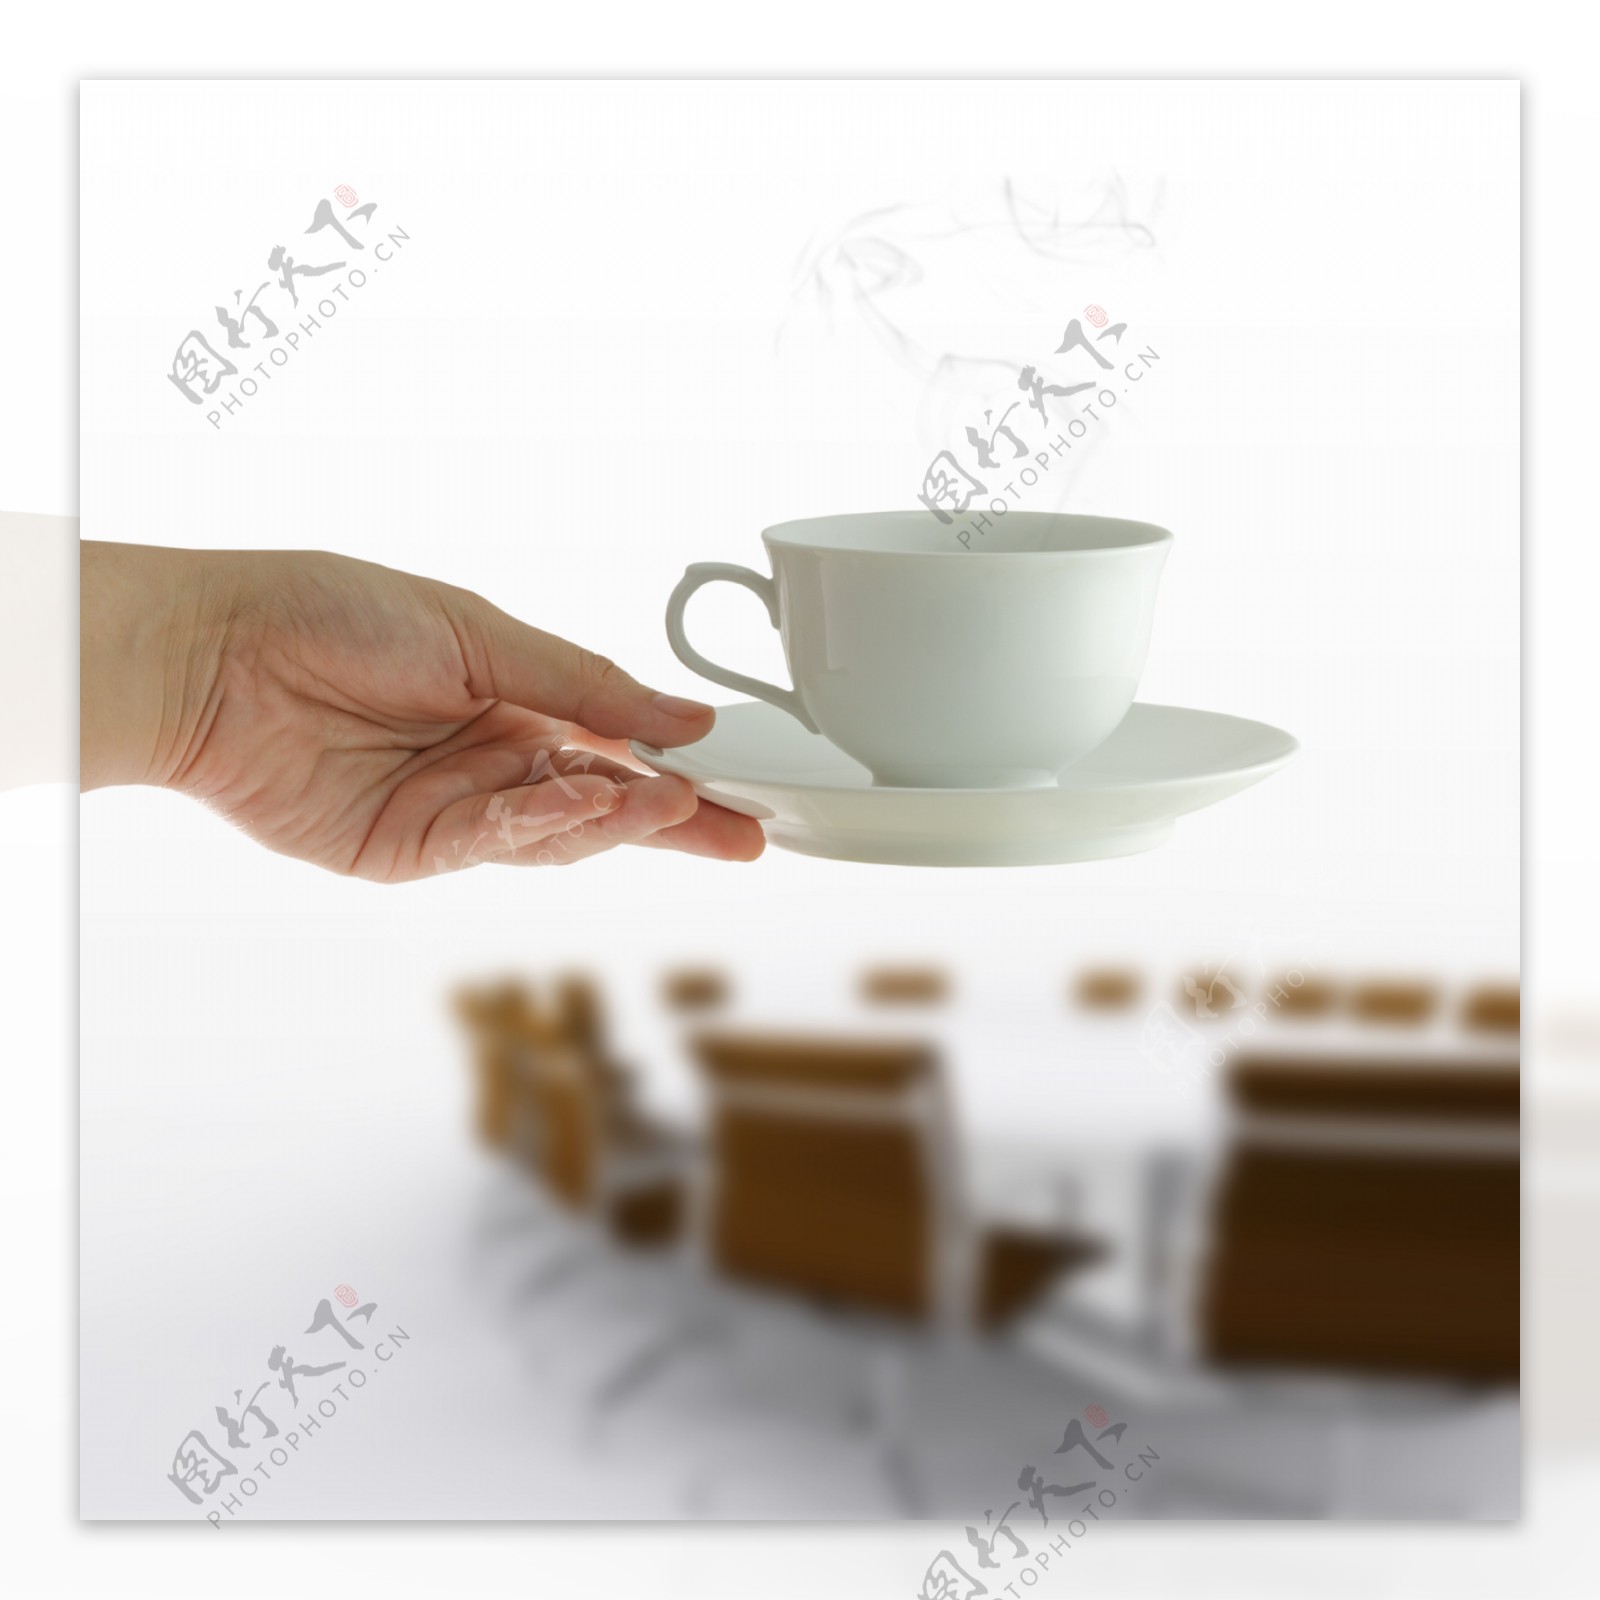 在女人手中的咖啡杯在会议桌的背景